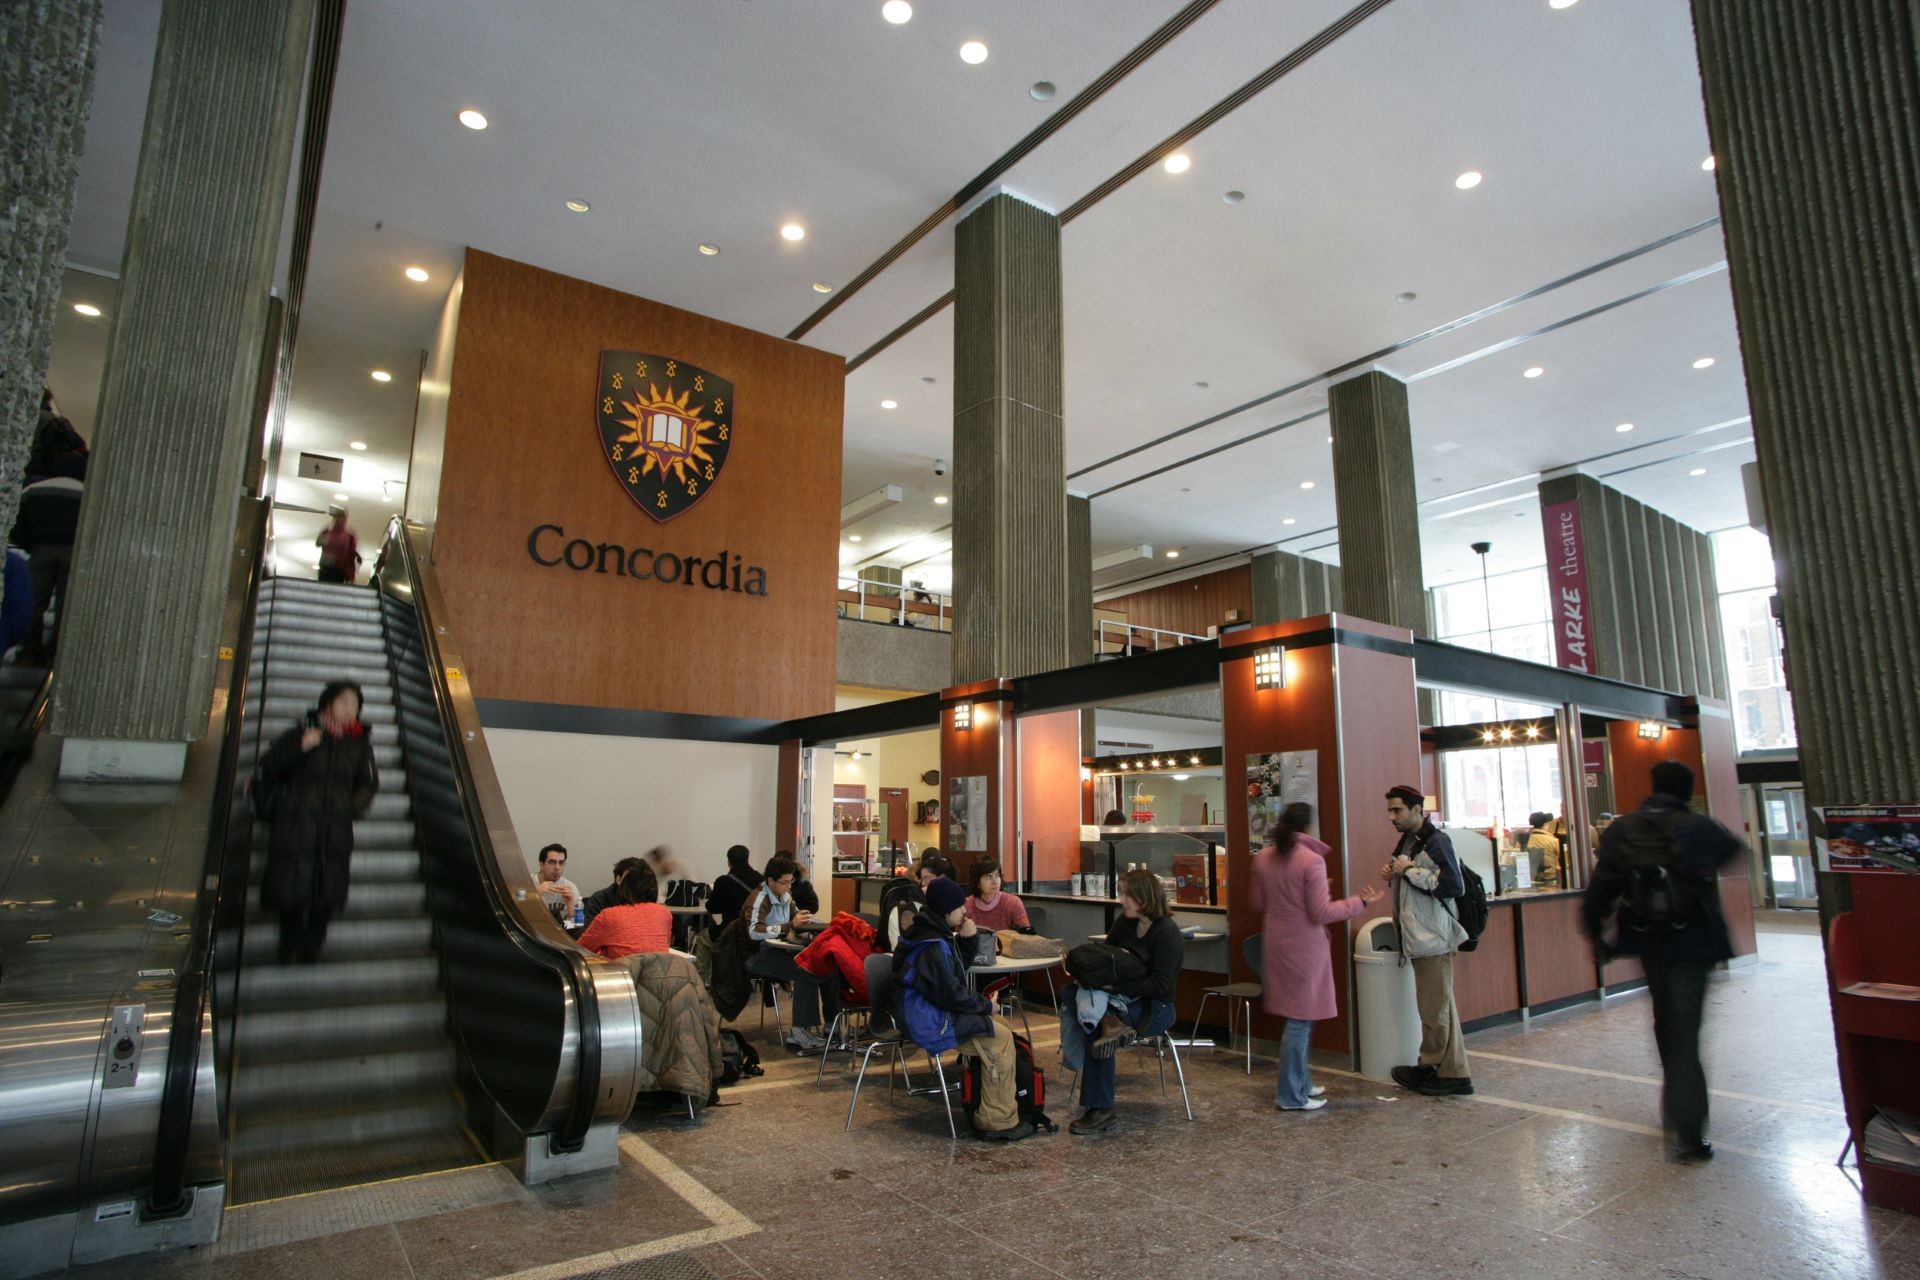 L'intérieur animé du Pavillon Hall de l'Université Concordia, avec des étudiants et un café sous le logo de l'université.